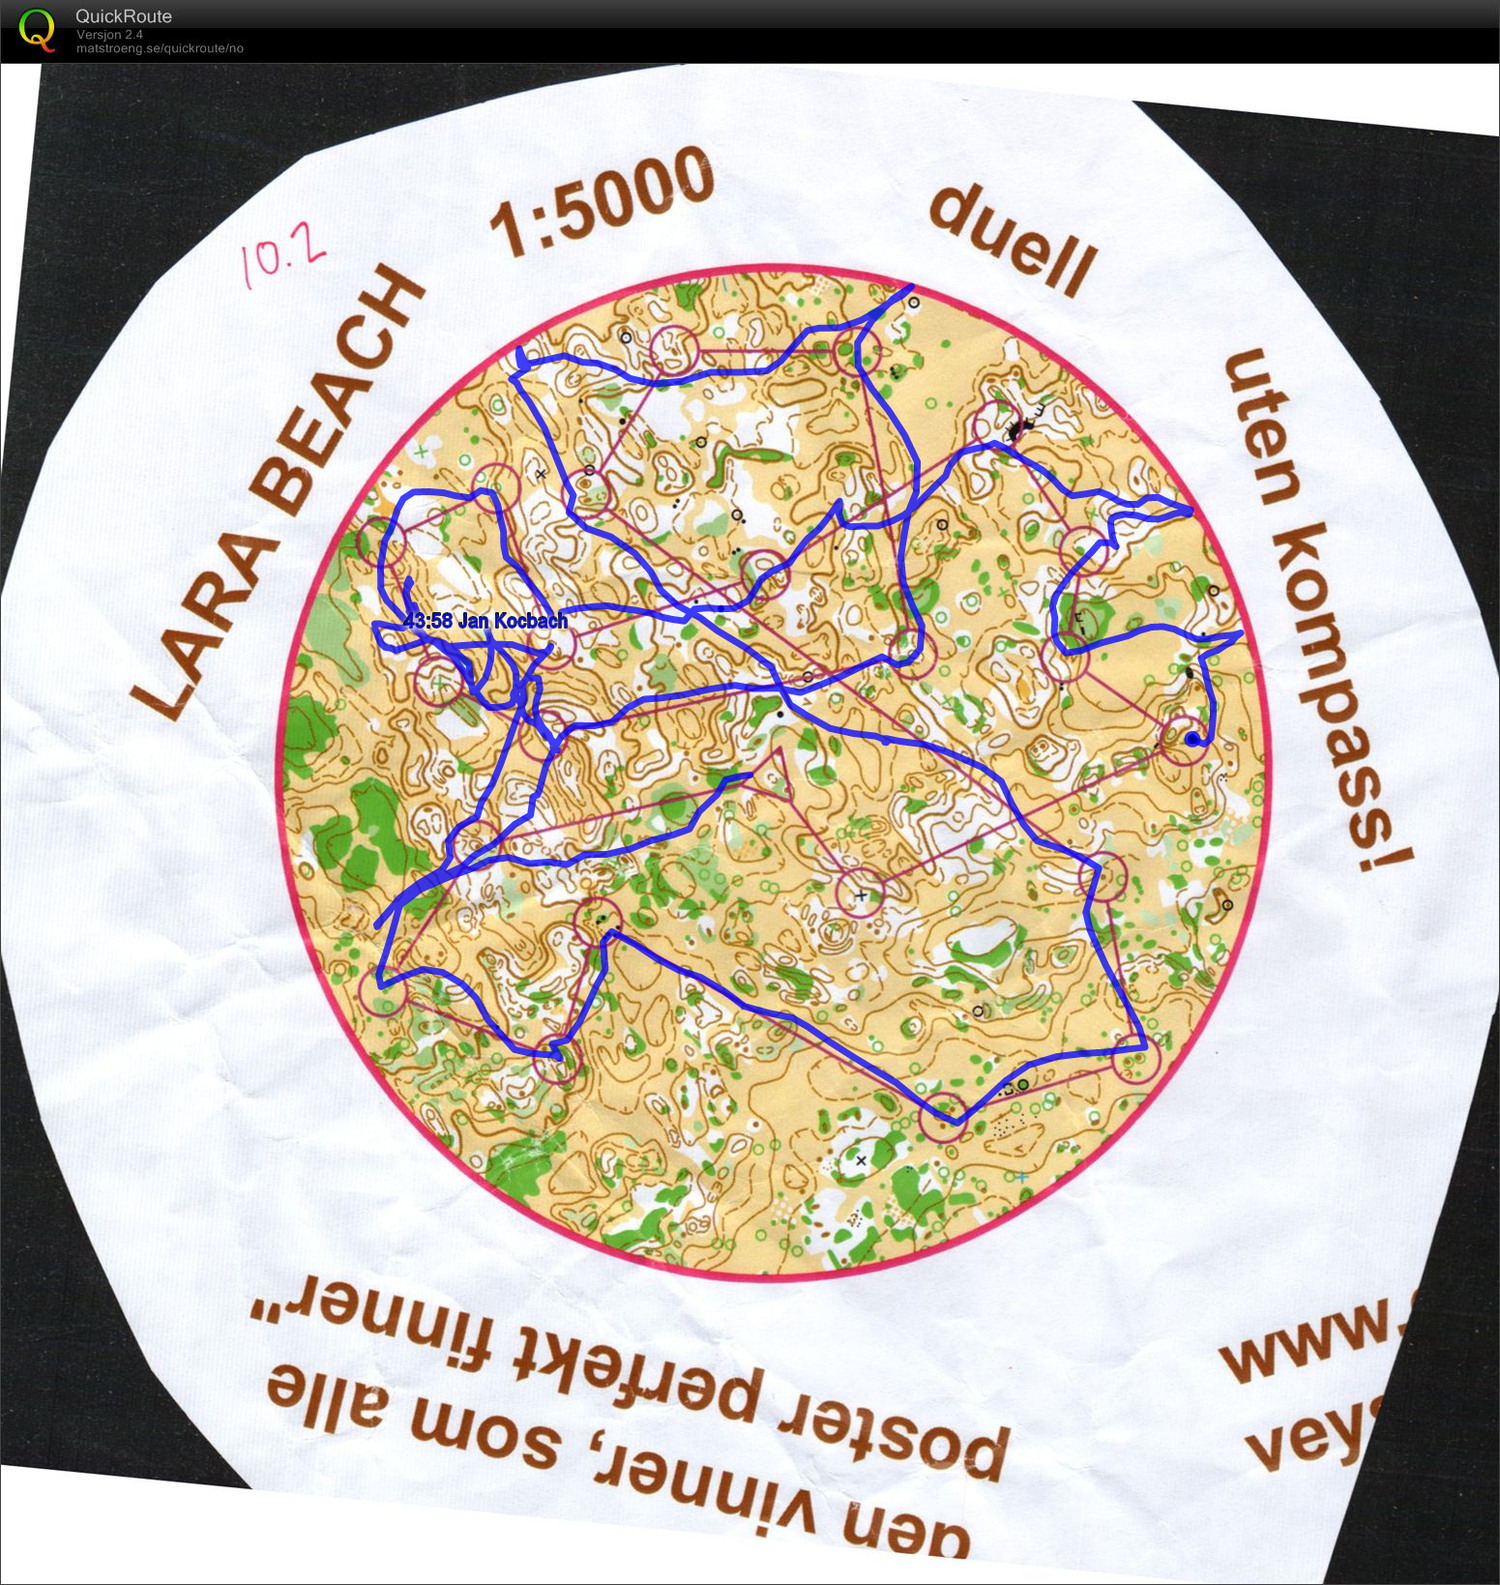 Circular map without compass (2013-02-26)